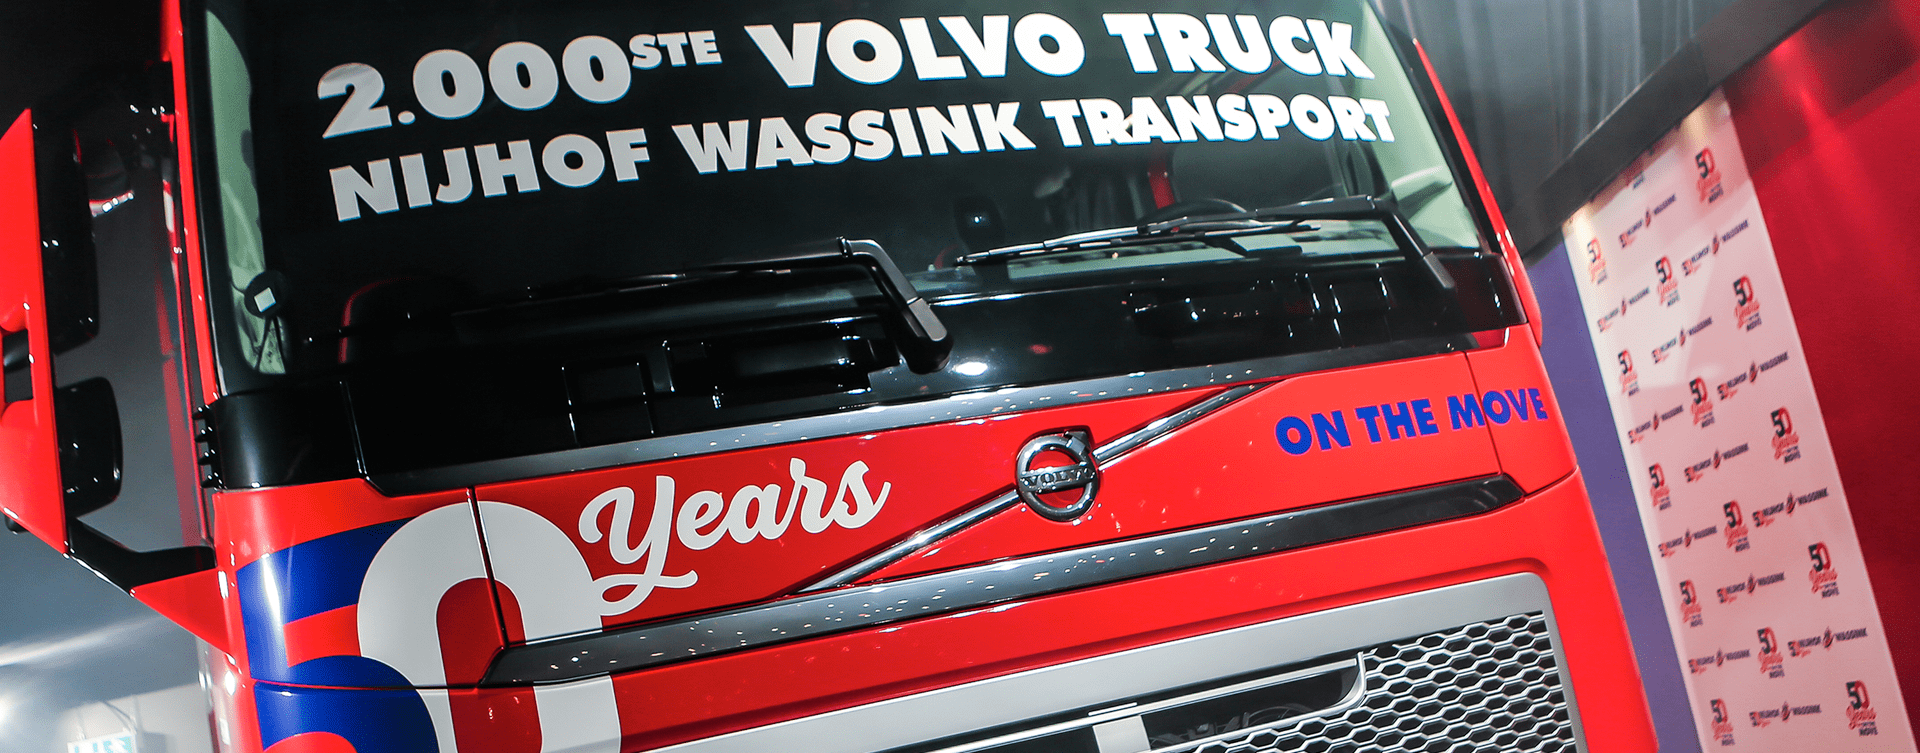 2000ste Volvo-truck voor Nijhof-Wassink